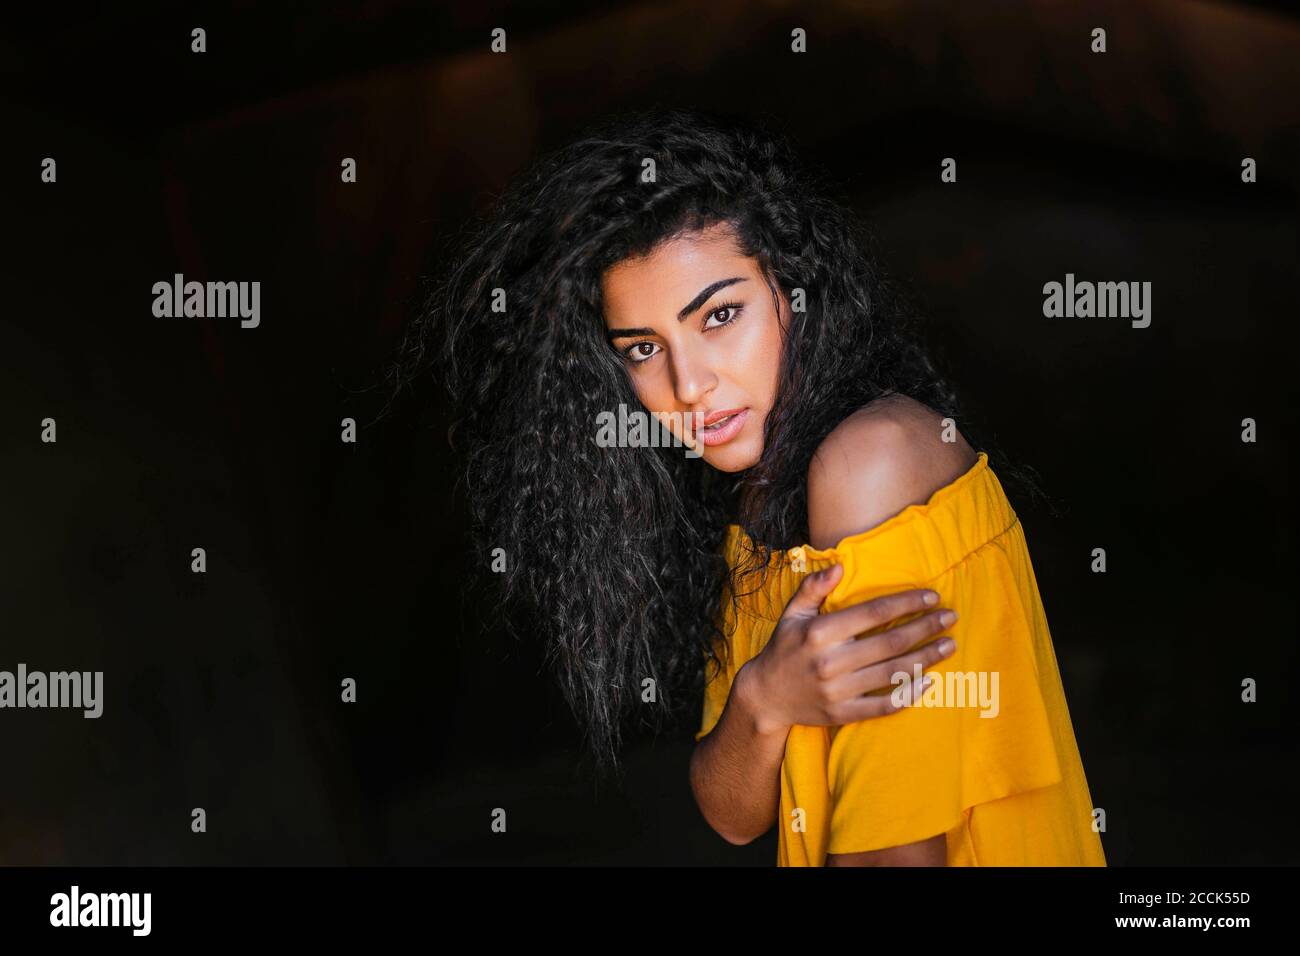 Portrait d'une jeune femme aux cheveux noirs, fond sombre Banque D'Images